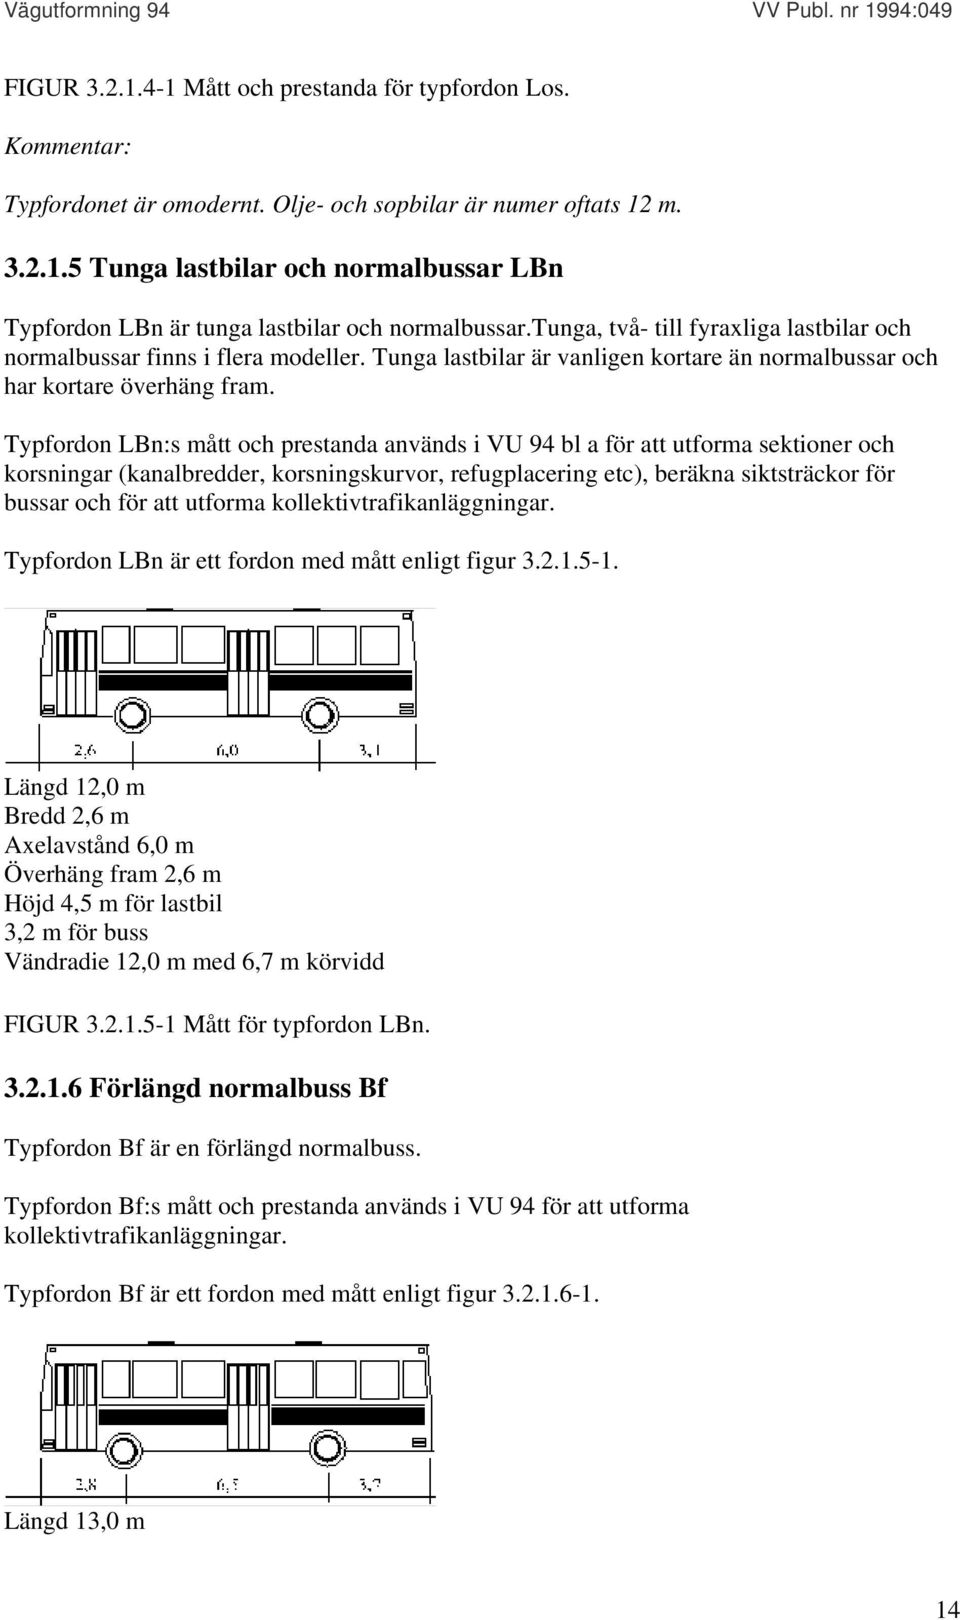 Typfordon LBn:s mått och prestanda används i VU 94 bl a för att utforma sektioner och korsningar (kanalbredder, korsningskurvor, refugplacering etc), beräkna siktsträckor för bussar och för att